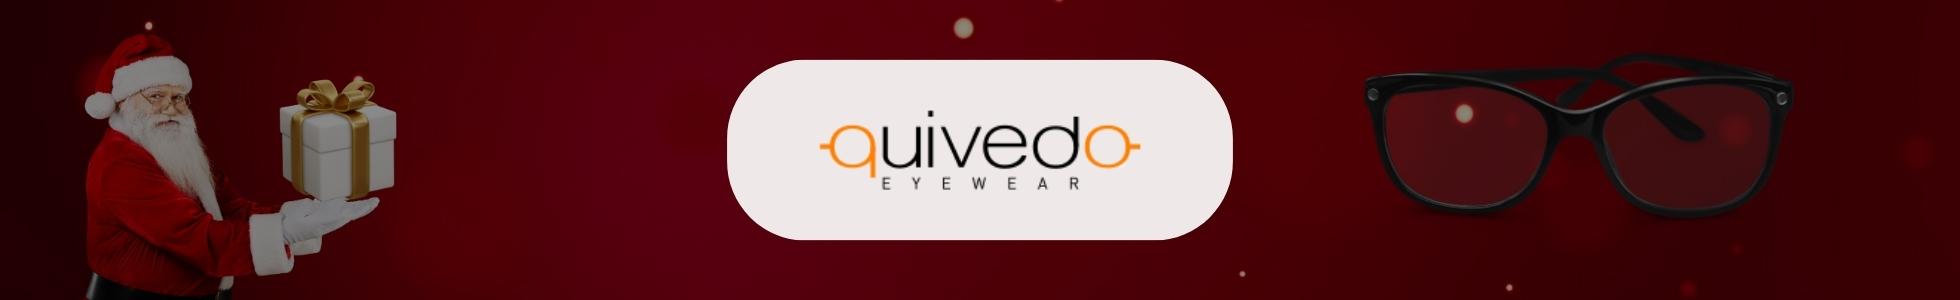 Quivedo.com - Shop online occhiali